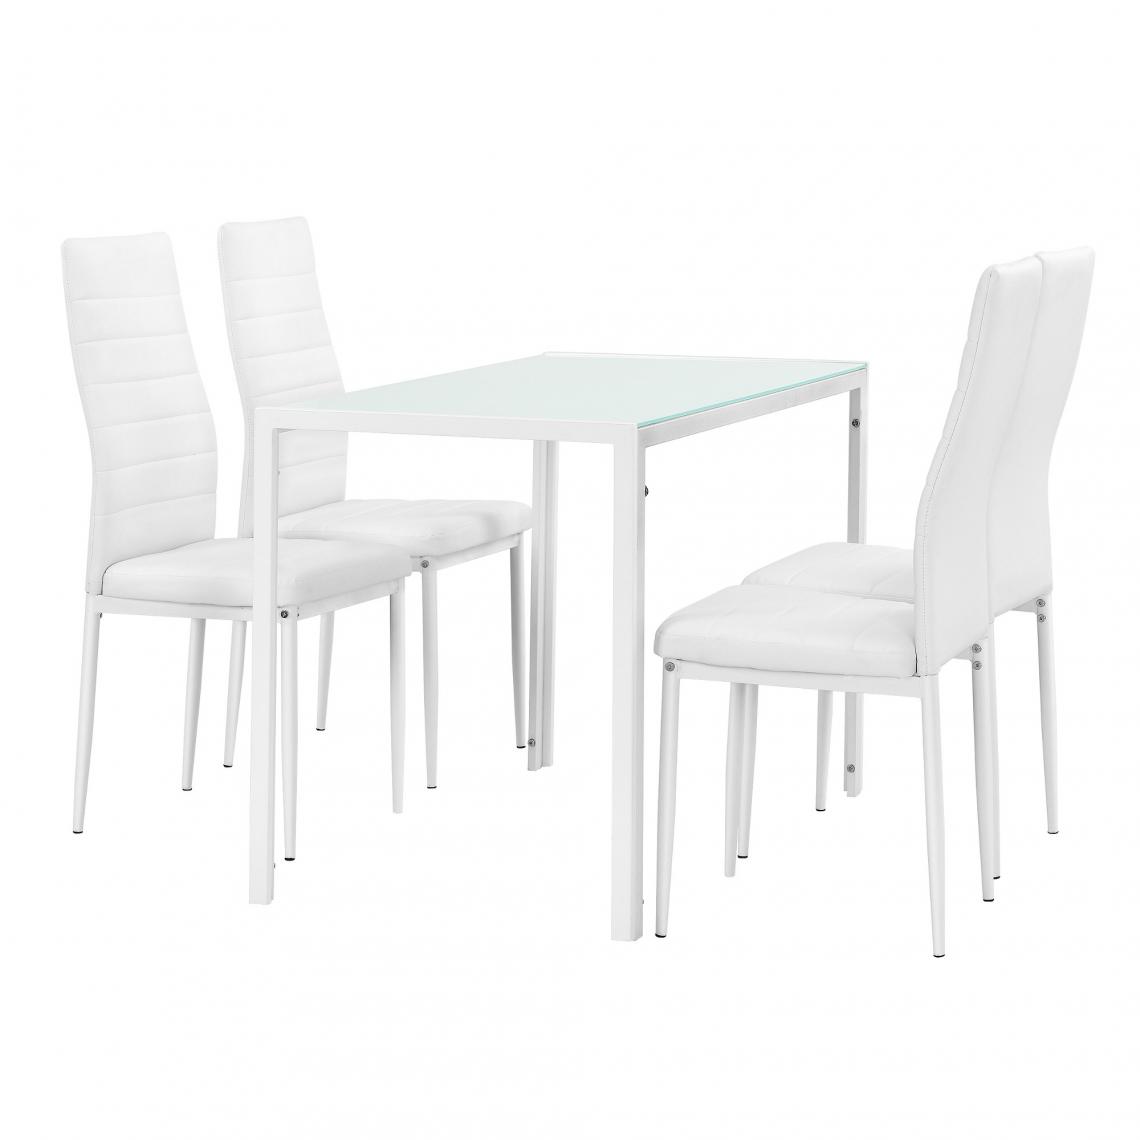 Helloshop26 - Table à manger blanc 105 cm + kit de chaises en 4 pièces blanc 03_0004002 - Tables à manger